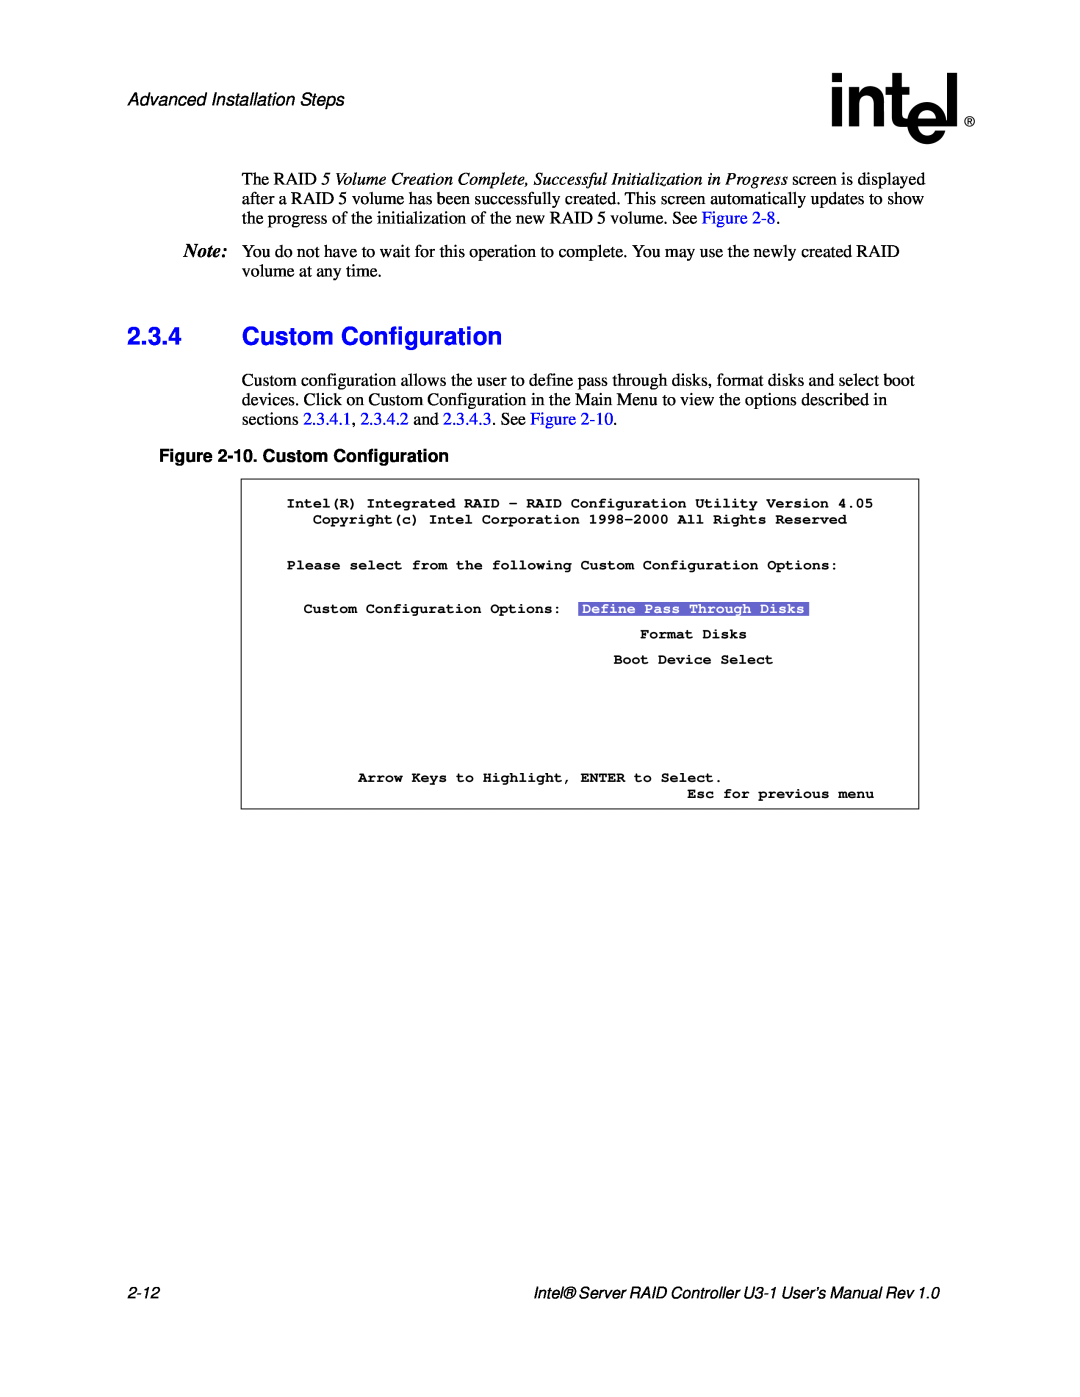 Intel SRCU31 user manual 2.3.4Custom Configuration, Advanced Installation Steps, 10.Custom Configuration 